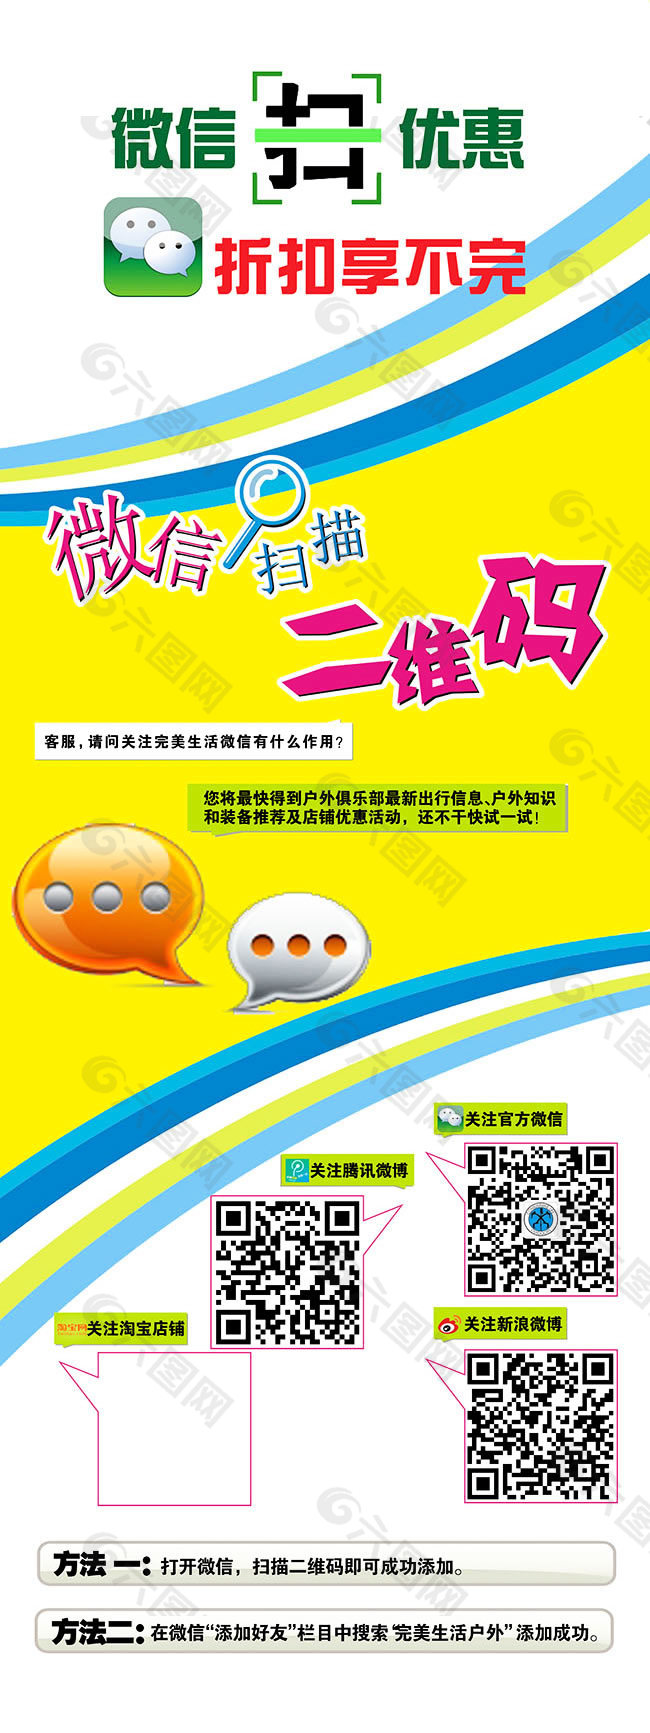 微信二维码宣传海报平面广告素材免费下载(图片编号:5402869)